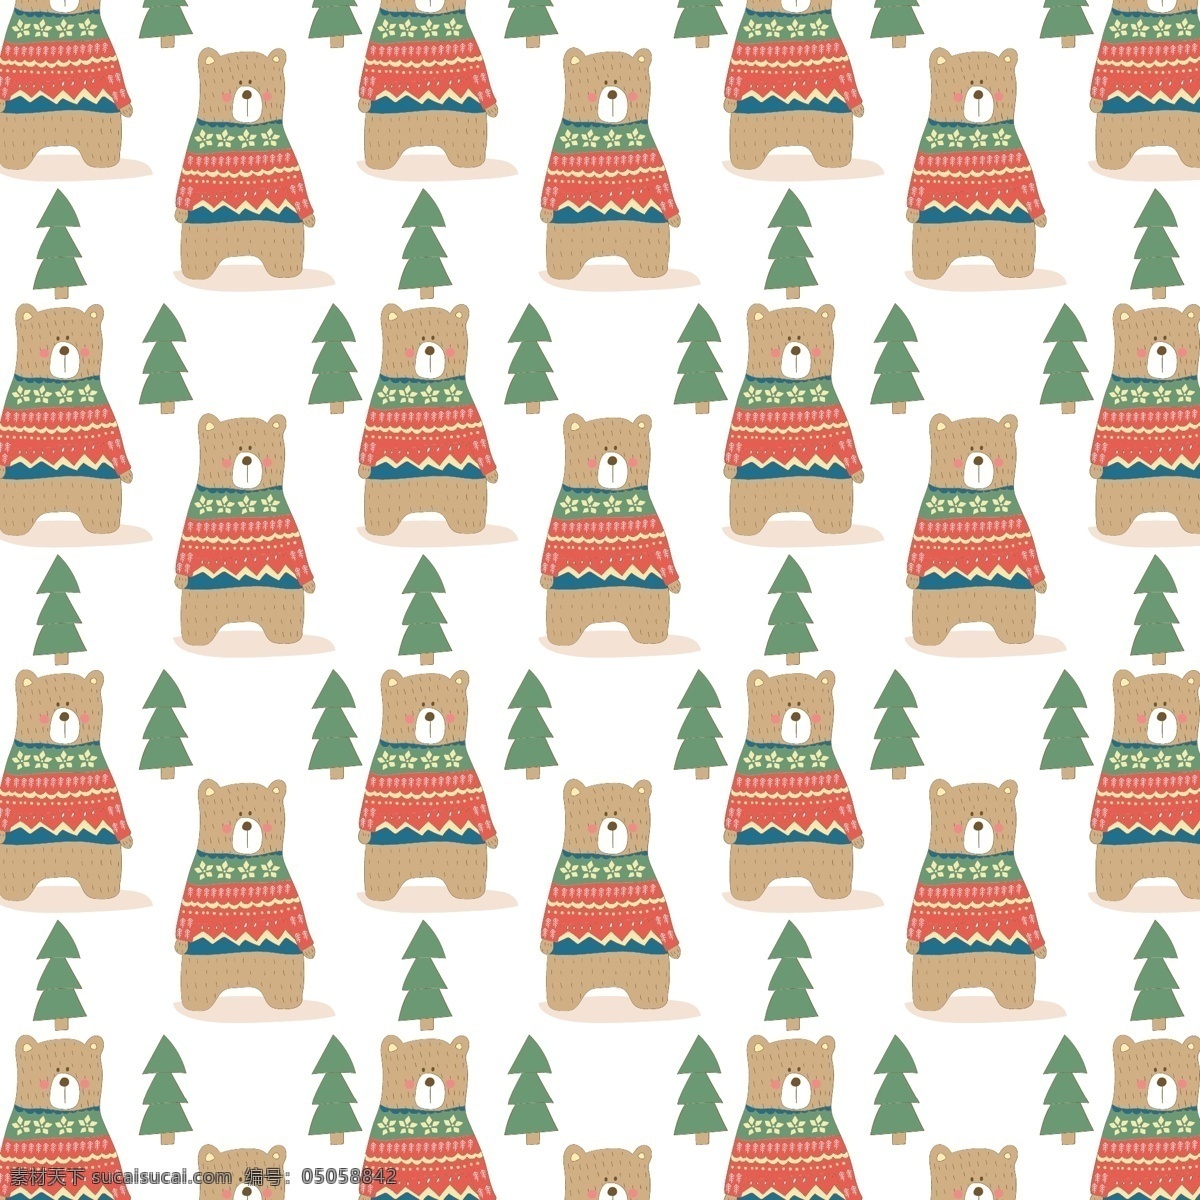 酷 小 熊 卡通 高清 矢量 冬季 冬日 动物 节日 毛衣 平面素材 设计素材 圣诞节 矢量素材 棕色 棕熊